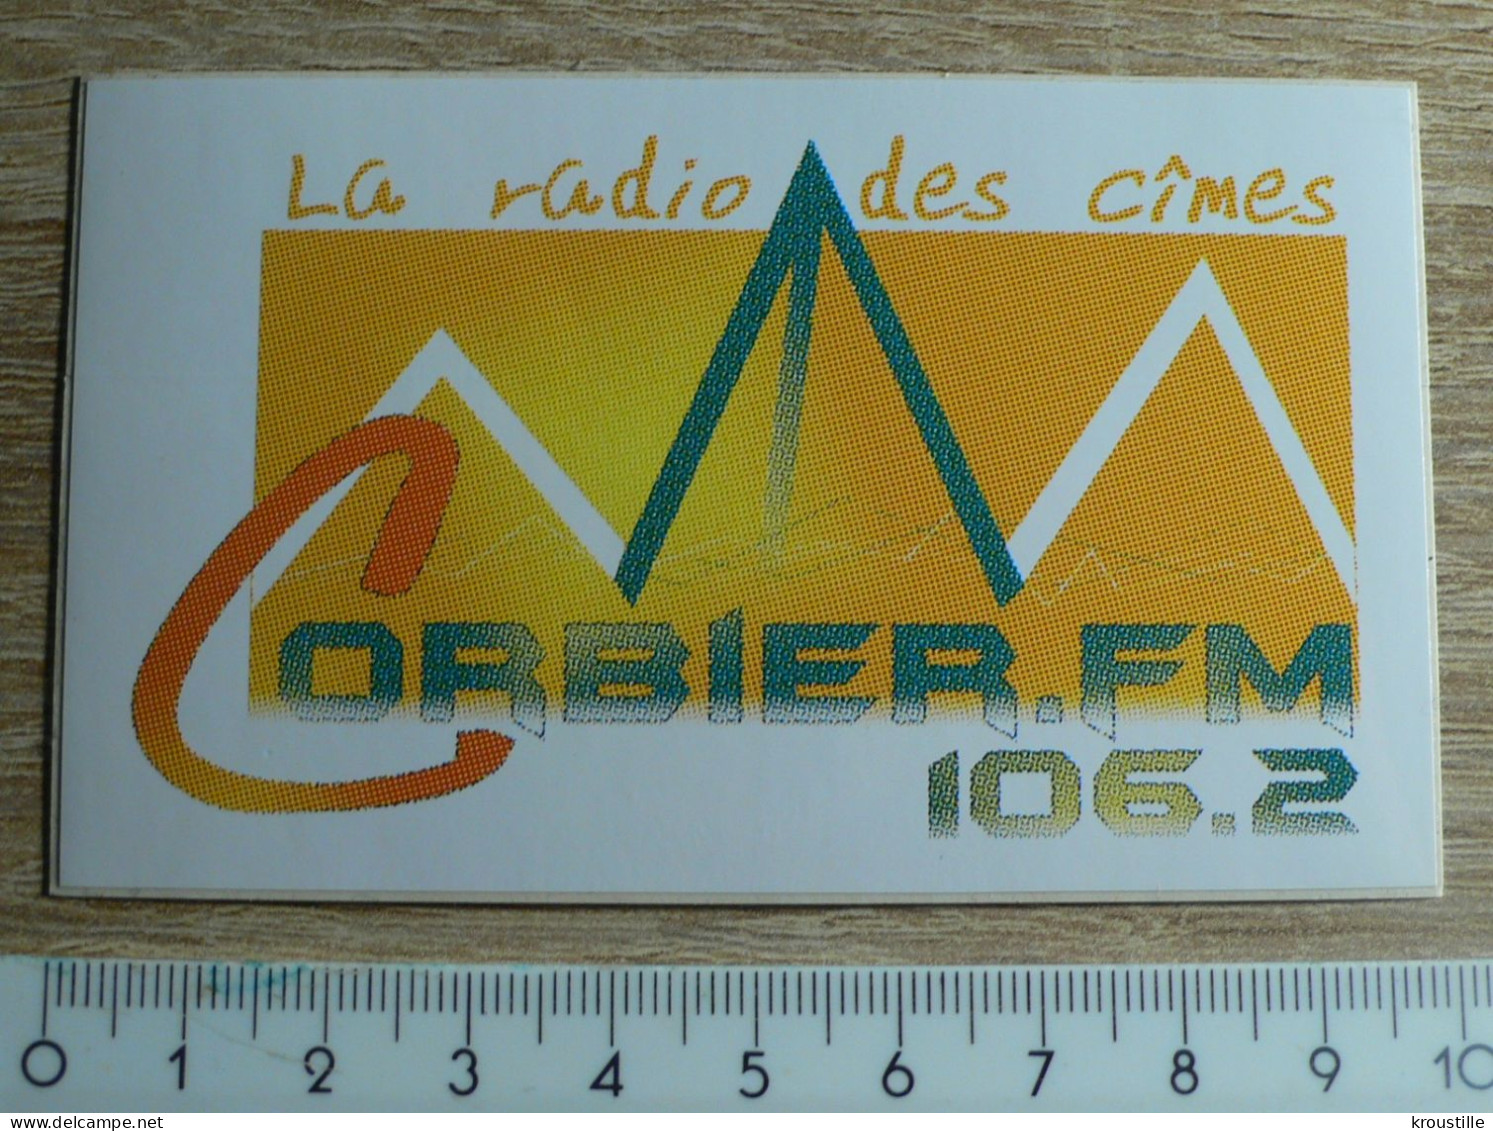 AUTOCOLLANT RADIO : CORBIER FM - LA RADIO DES CIMES - Autocollants